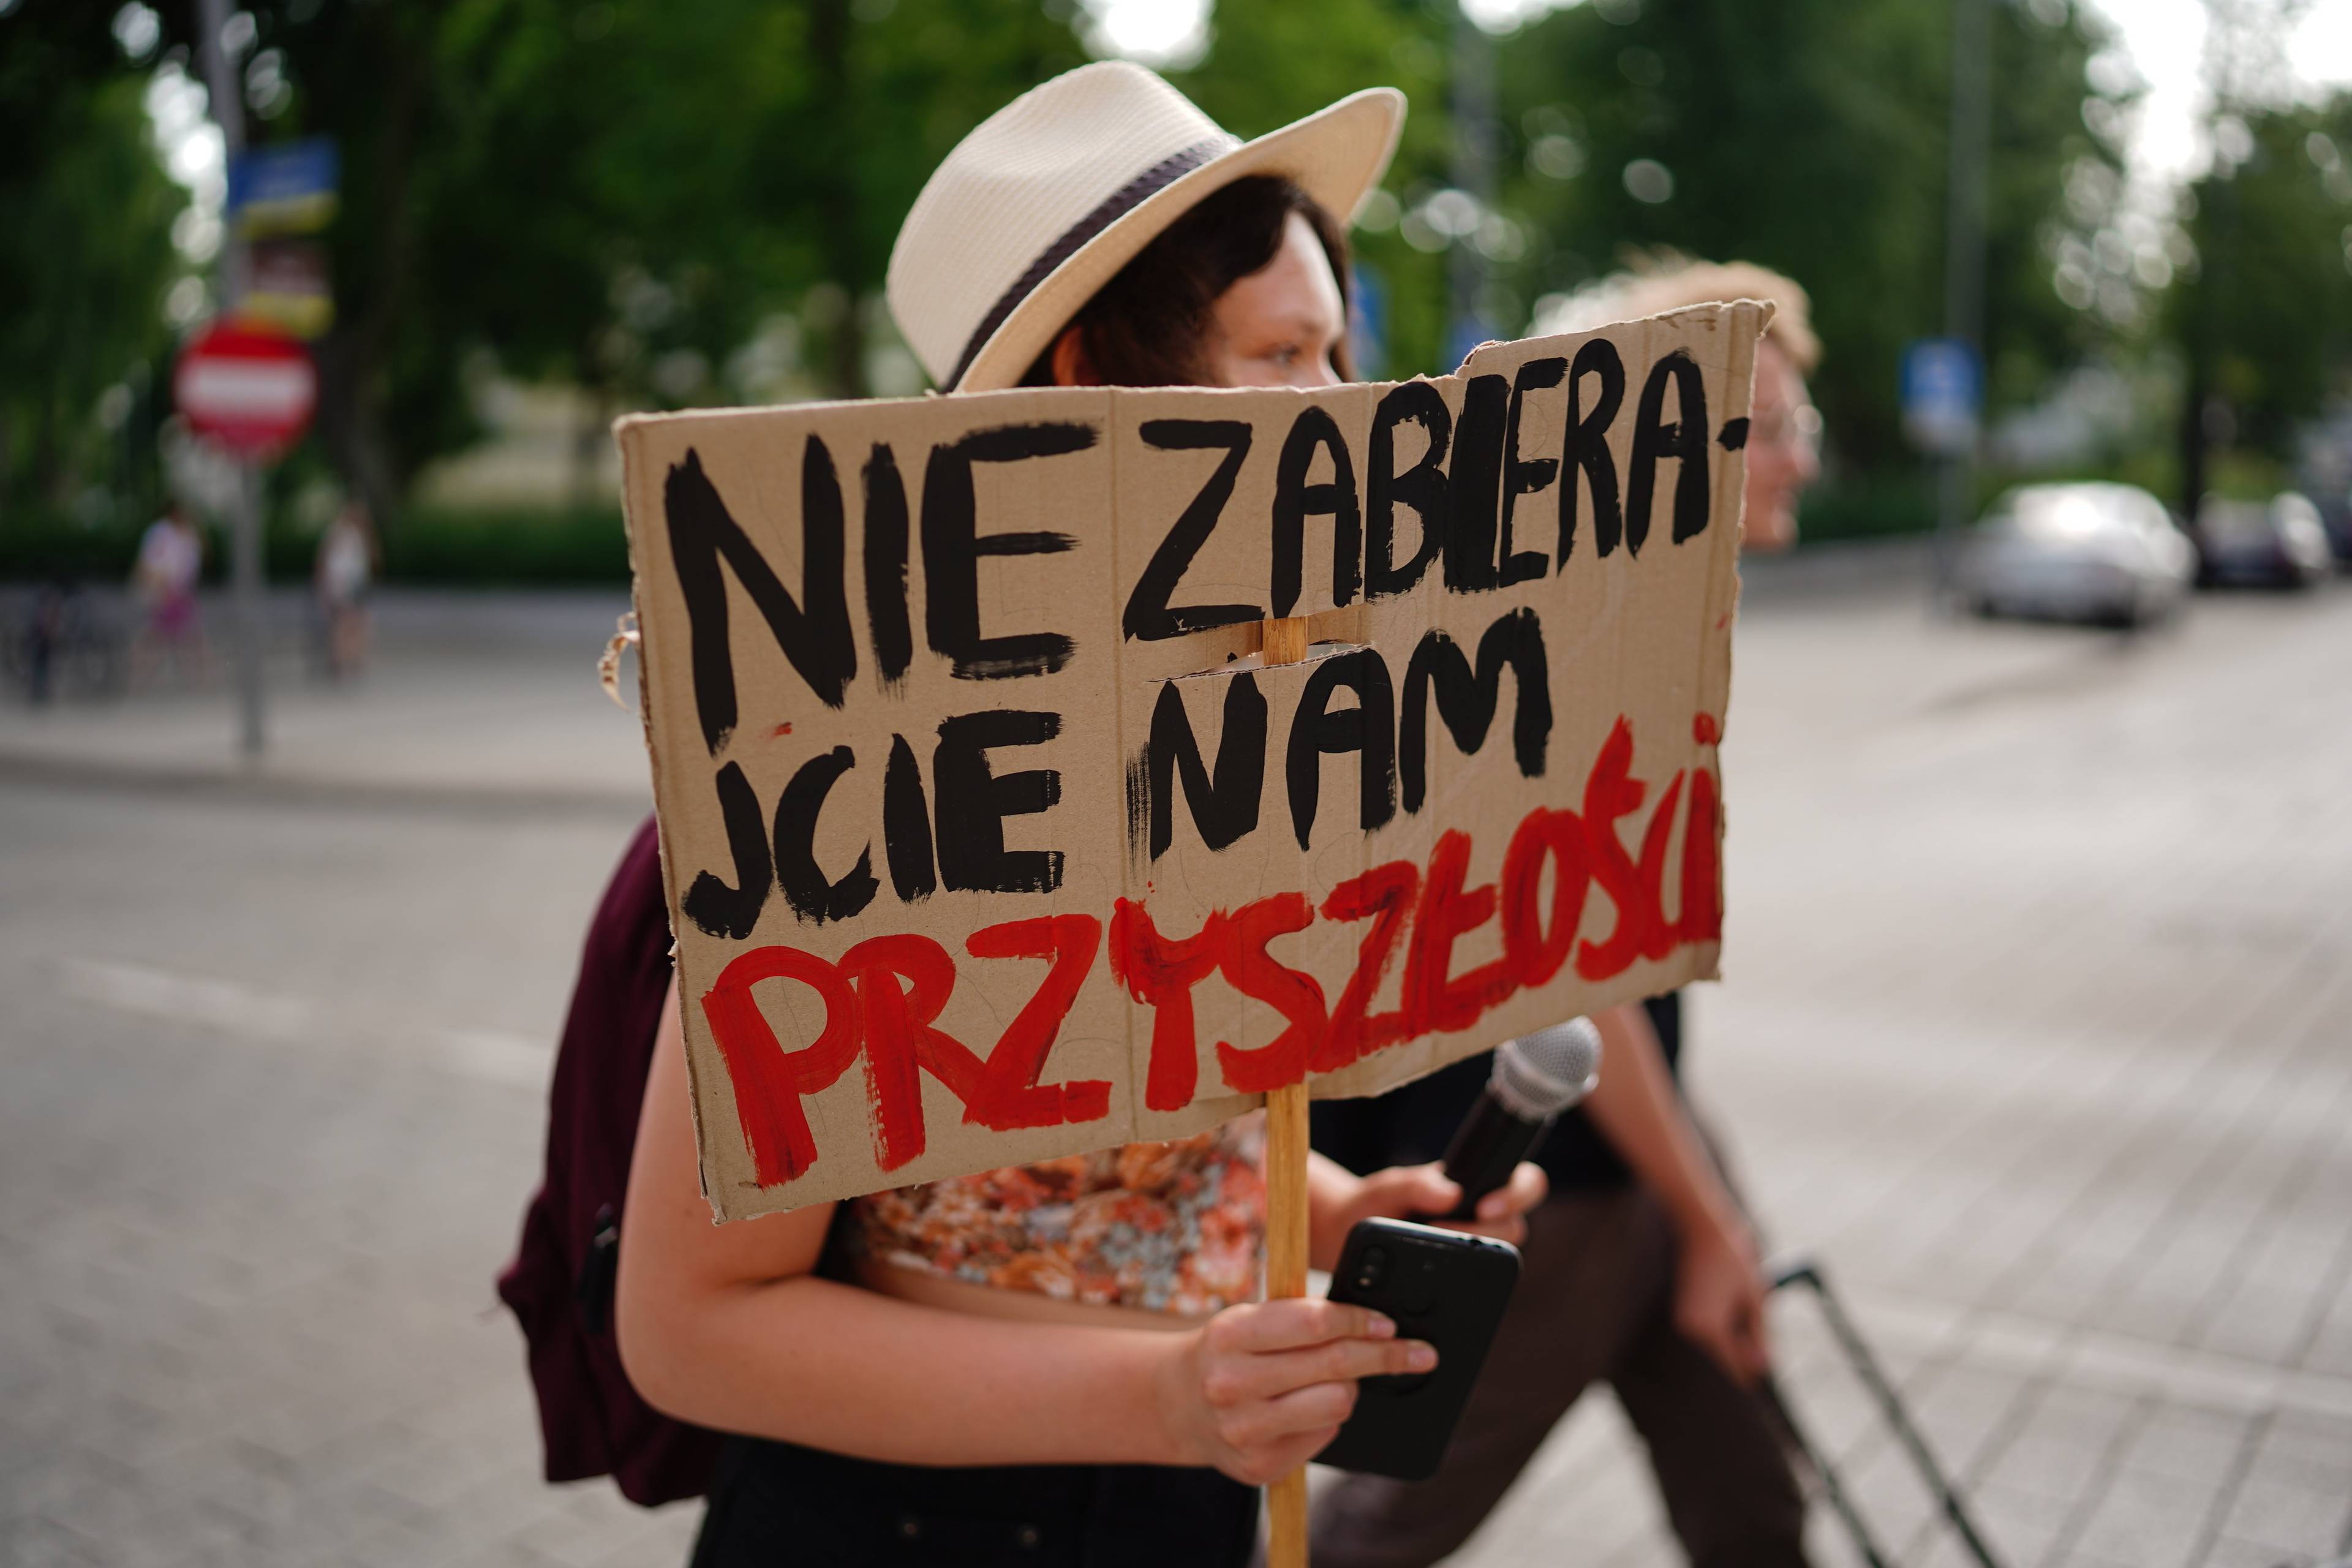 Młoda kobieta z plakatem, na którym napisała "Nie zabierajcie nam przyszłości"